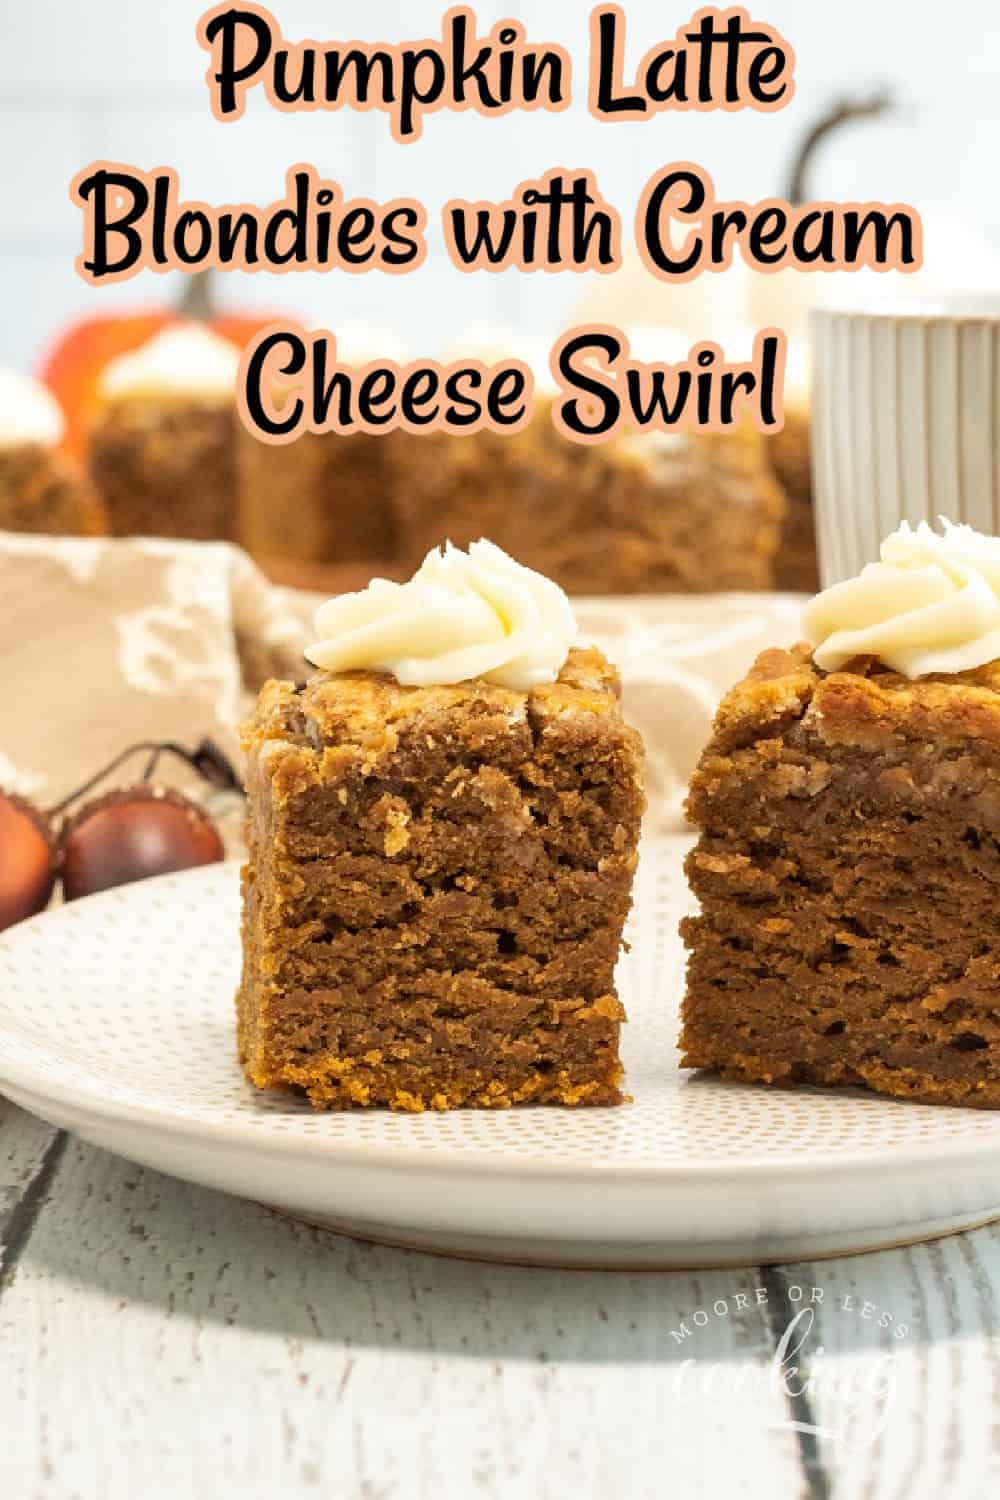 Pumpkin Latte Blondies with Cream Cheese Swirl